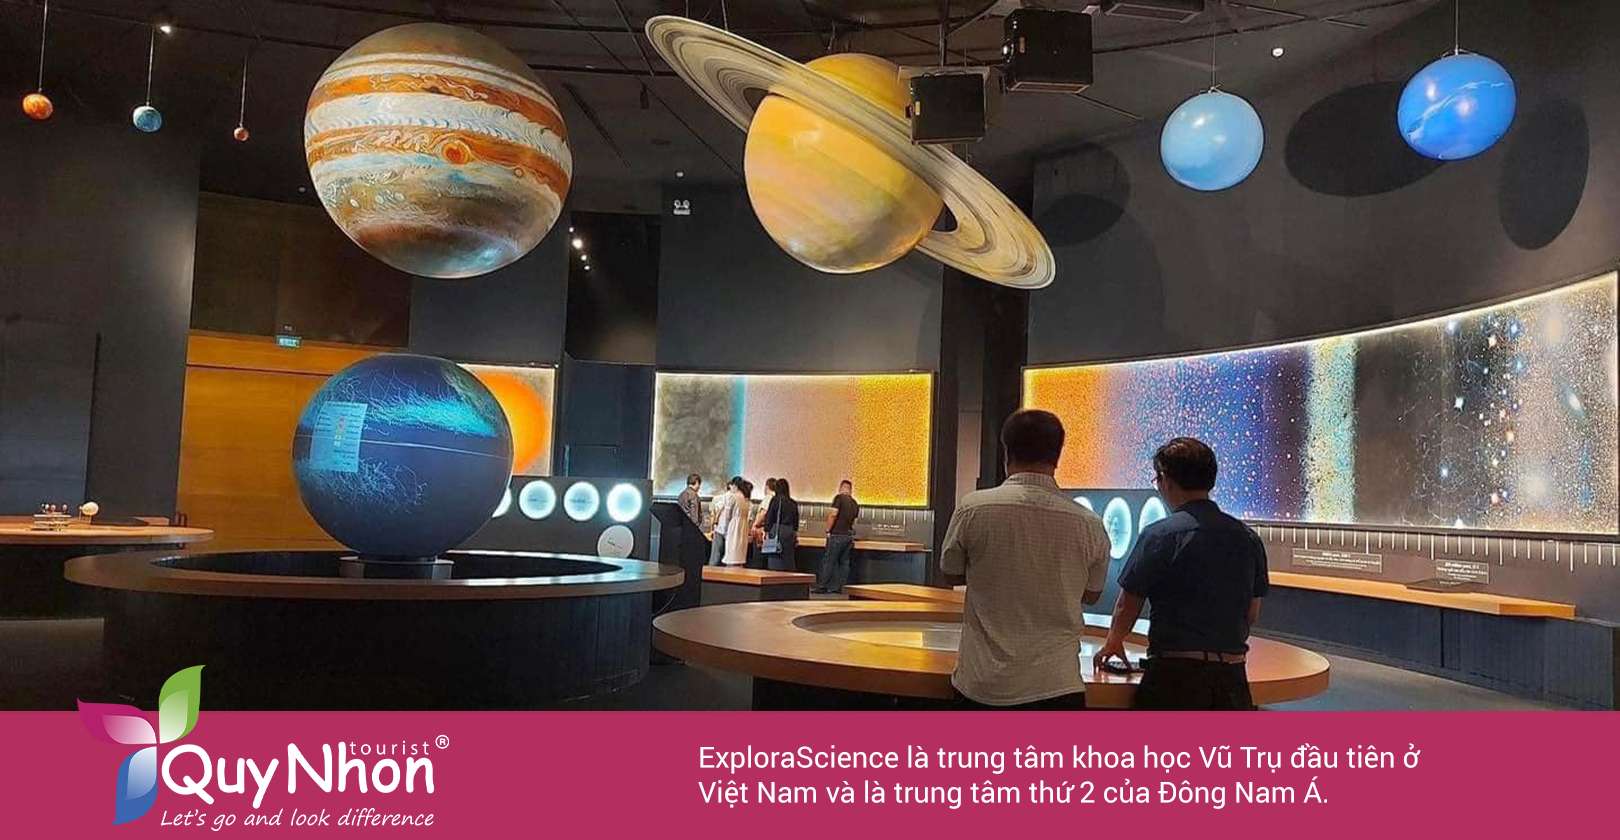 ExploraScience là trung tâm khoa học Vũ Trụ đầu tiên ở Việt Nam và là trung tâm thứ 2 của Đông Nam Á.